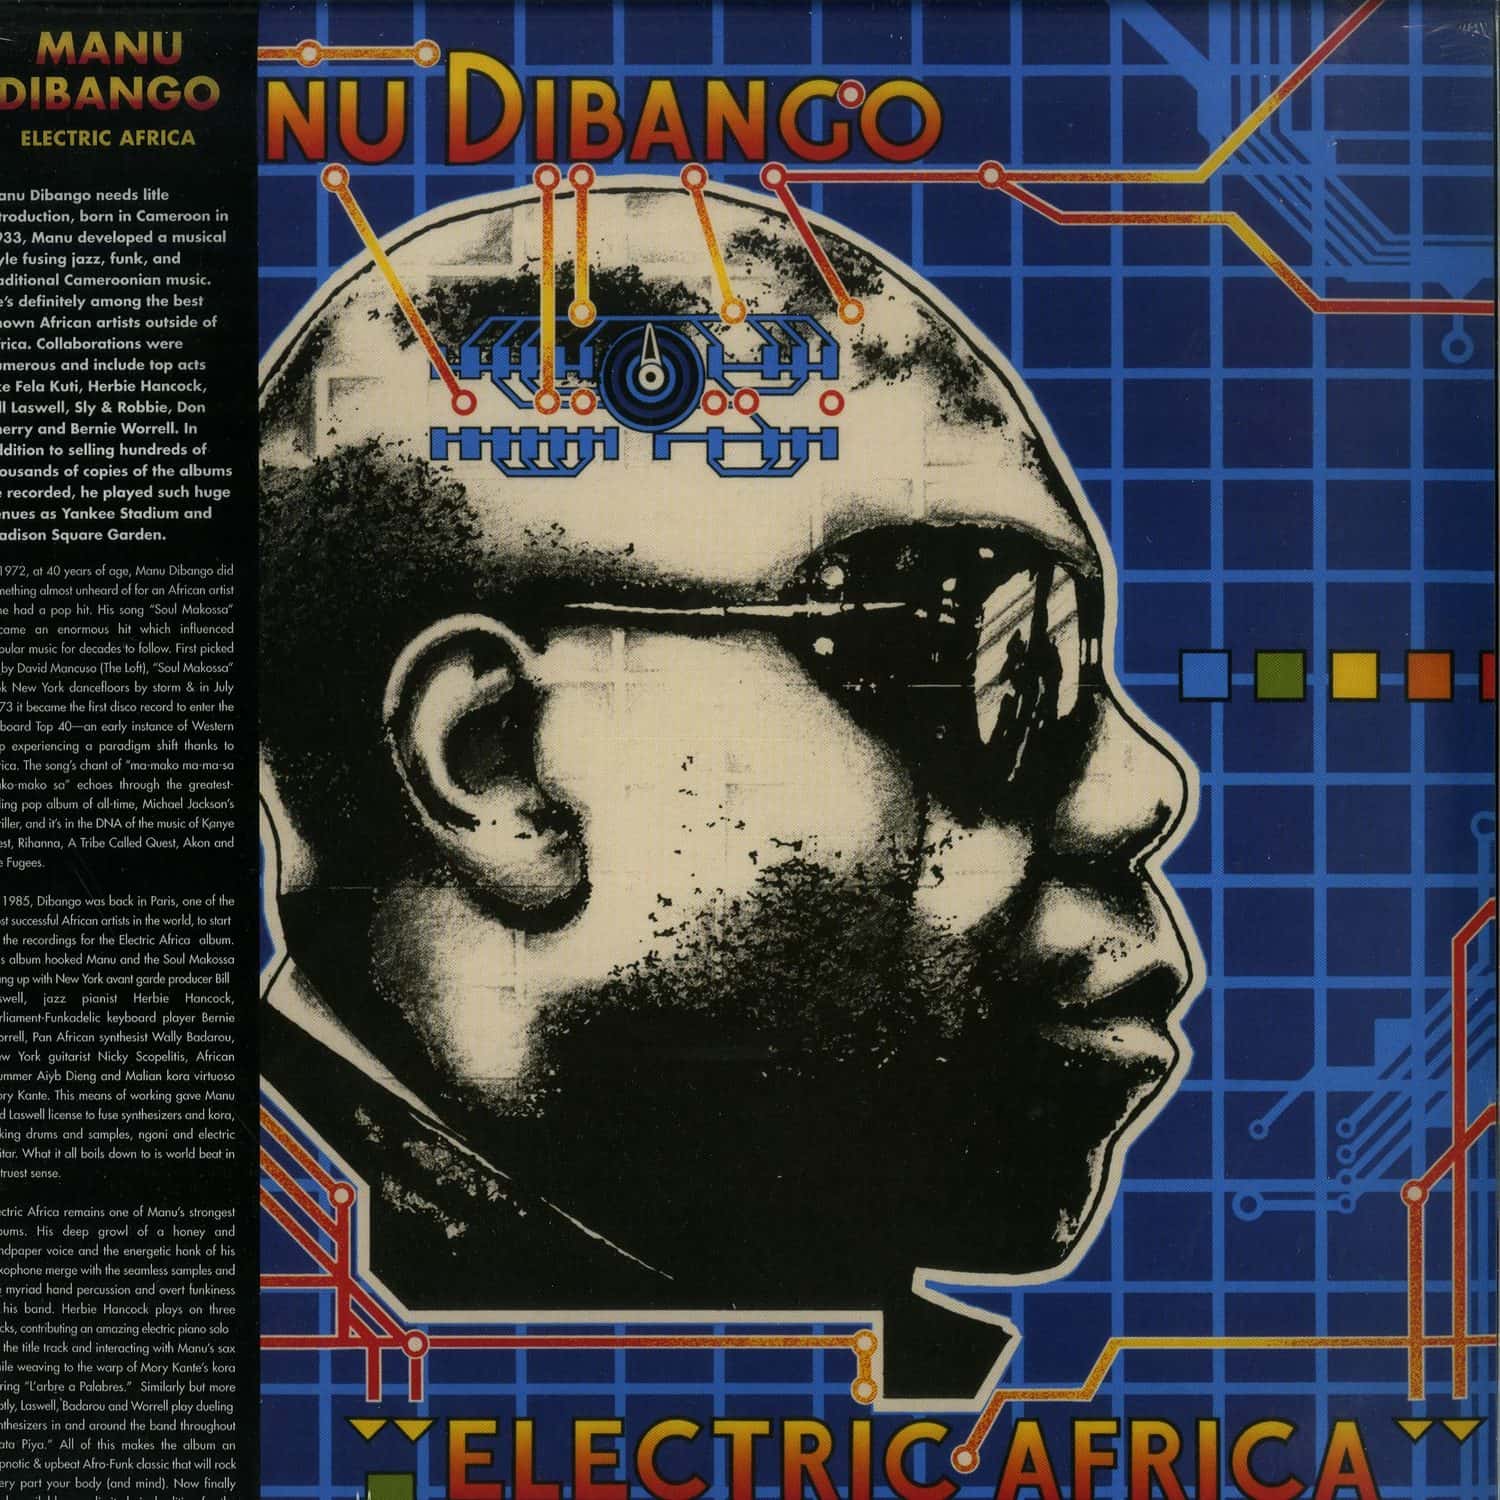 Manu Dibango - ELECTRIC AFRICA 